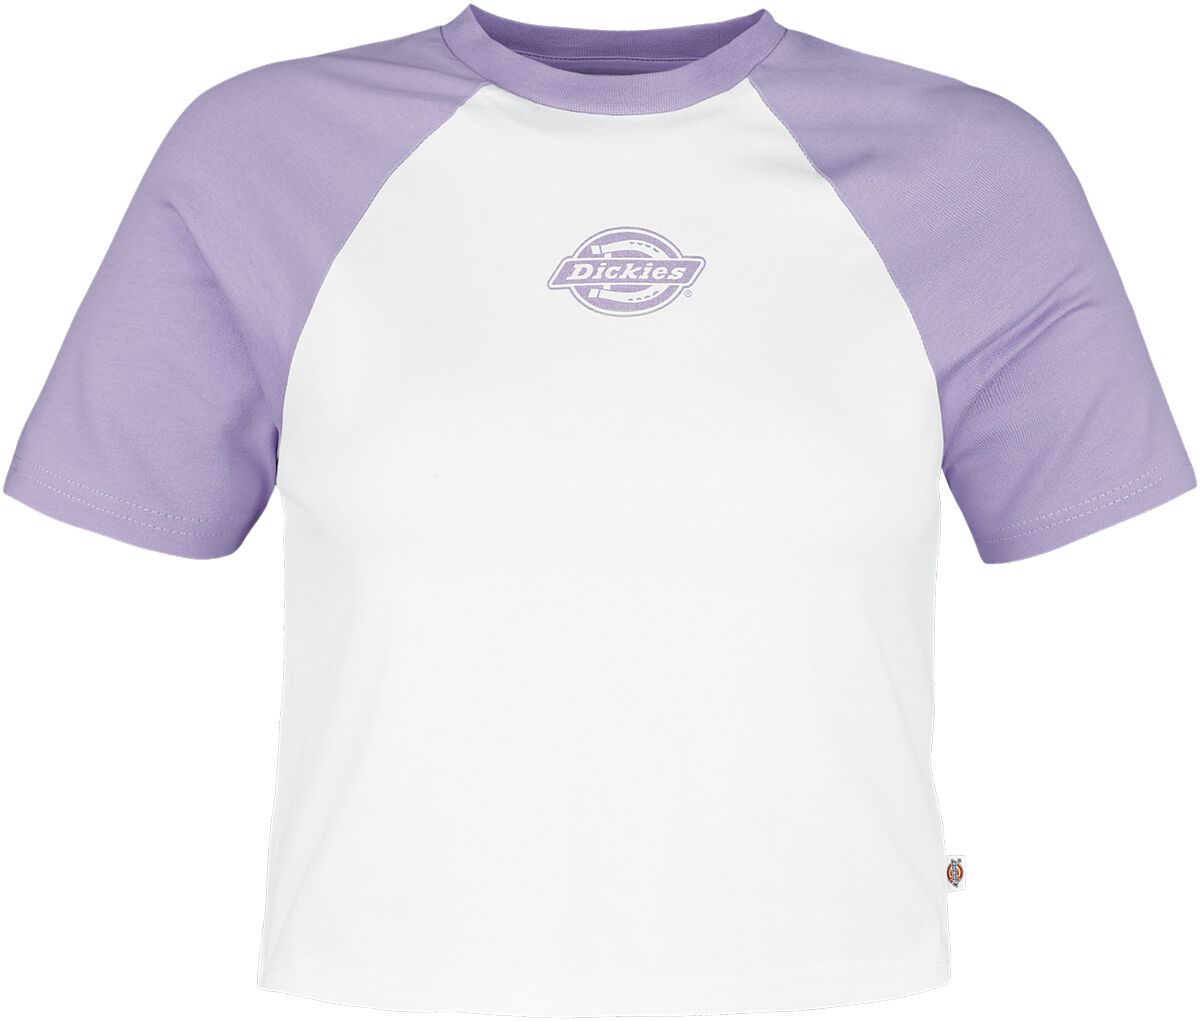 Dickies T-Shirt - Sodaville Tee - XS bis L - für Damen - Größe L - lila/weiß